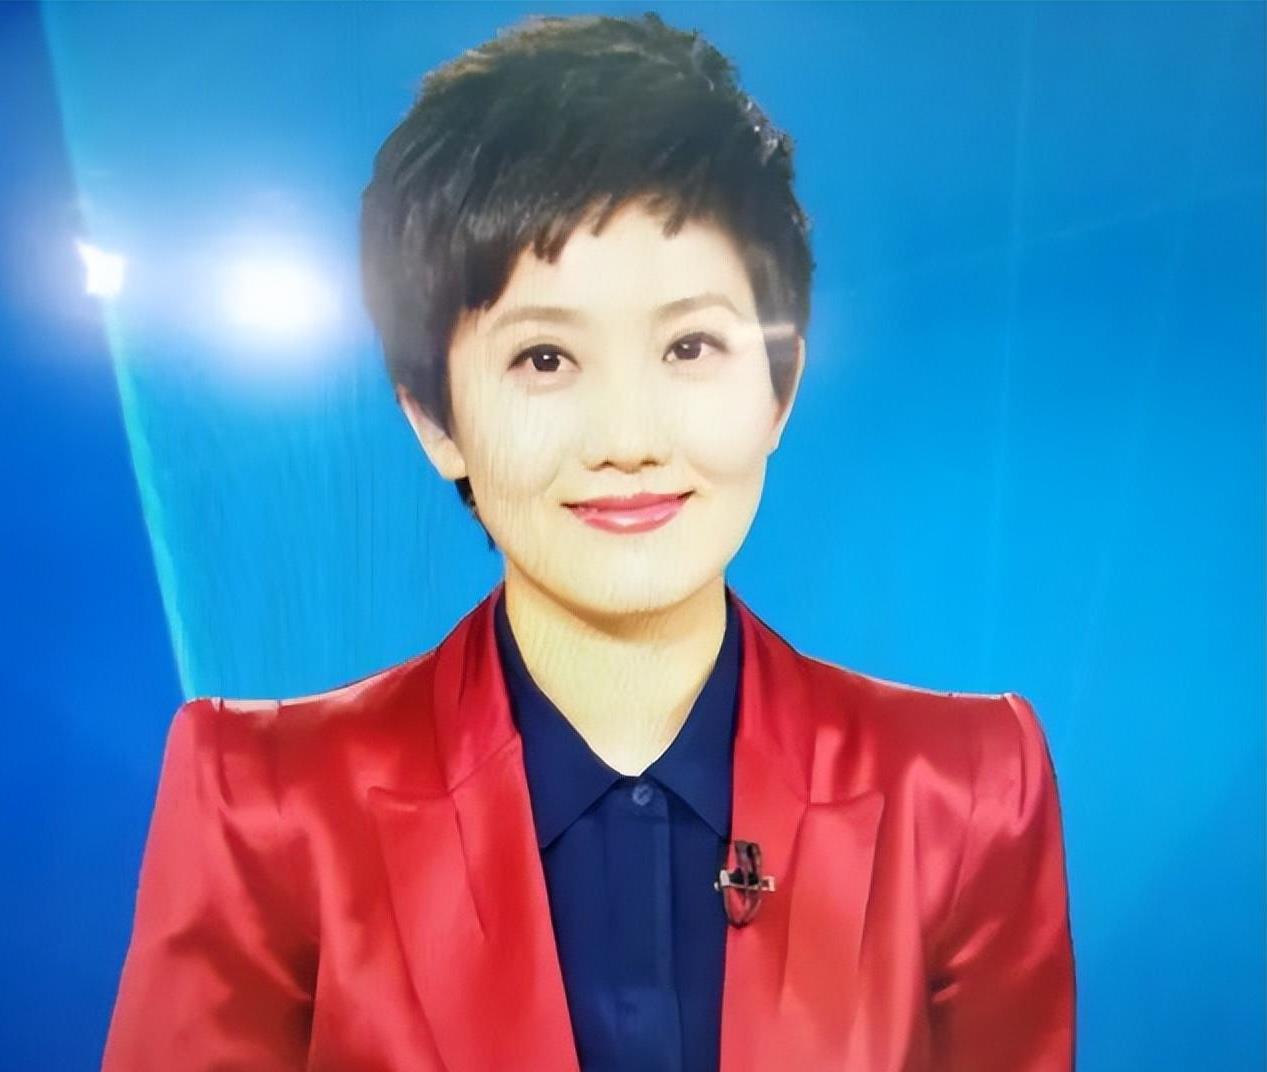 央视女主播郑天亮:父母帮助化解生活困局 郑天亮的职业生涯充满波折和